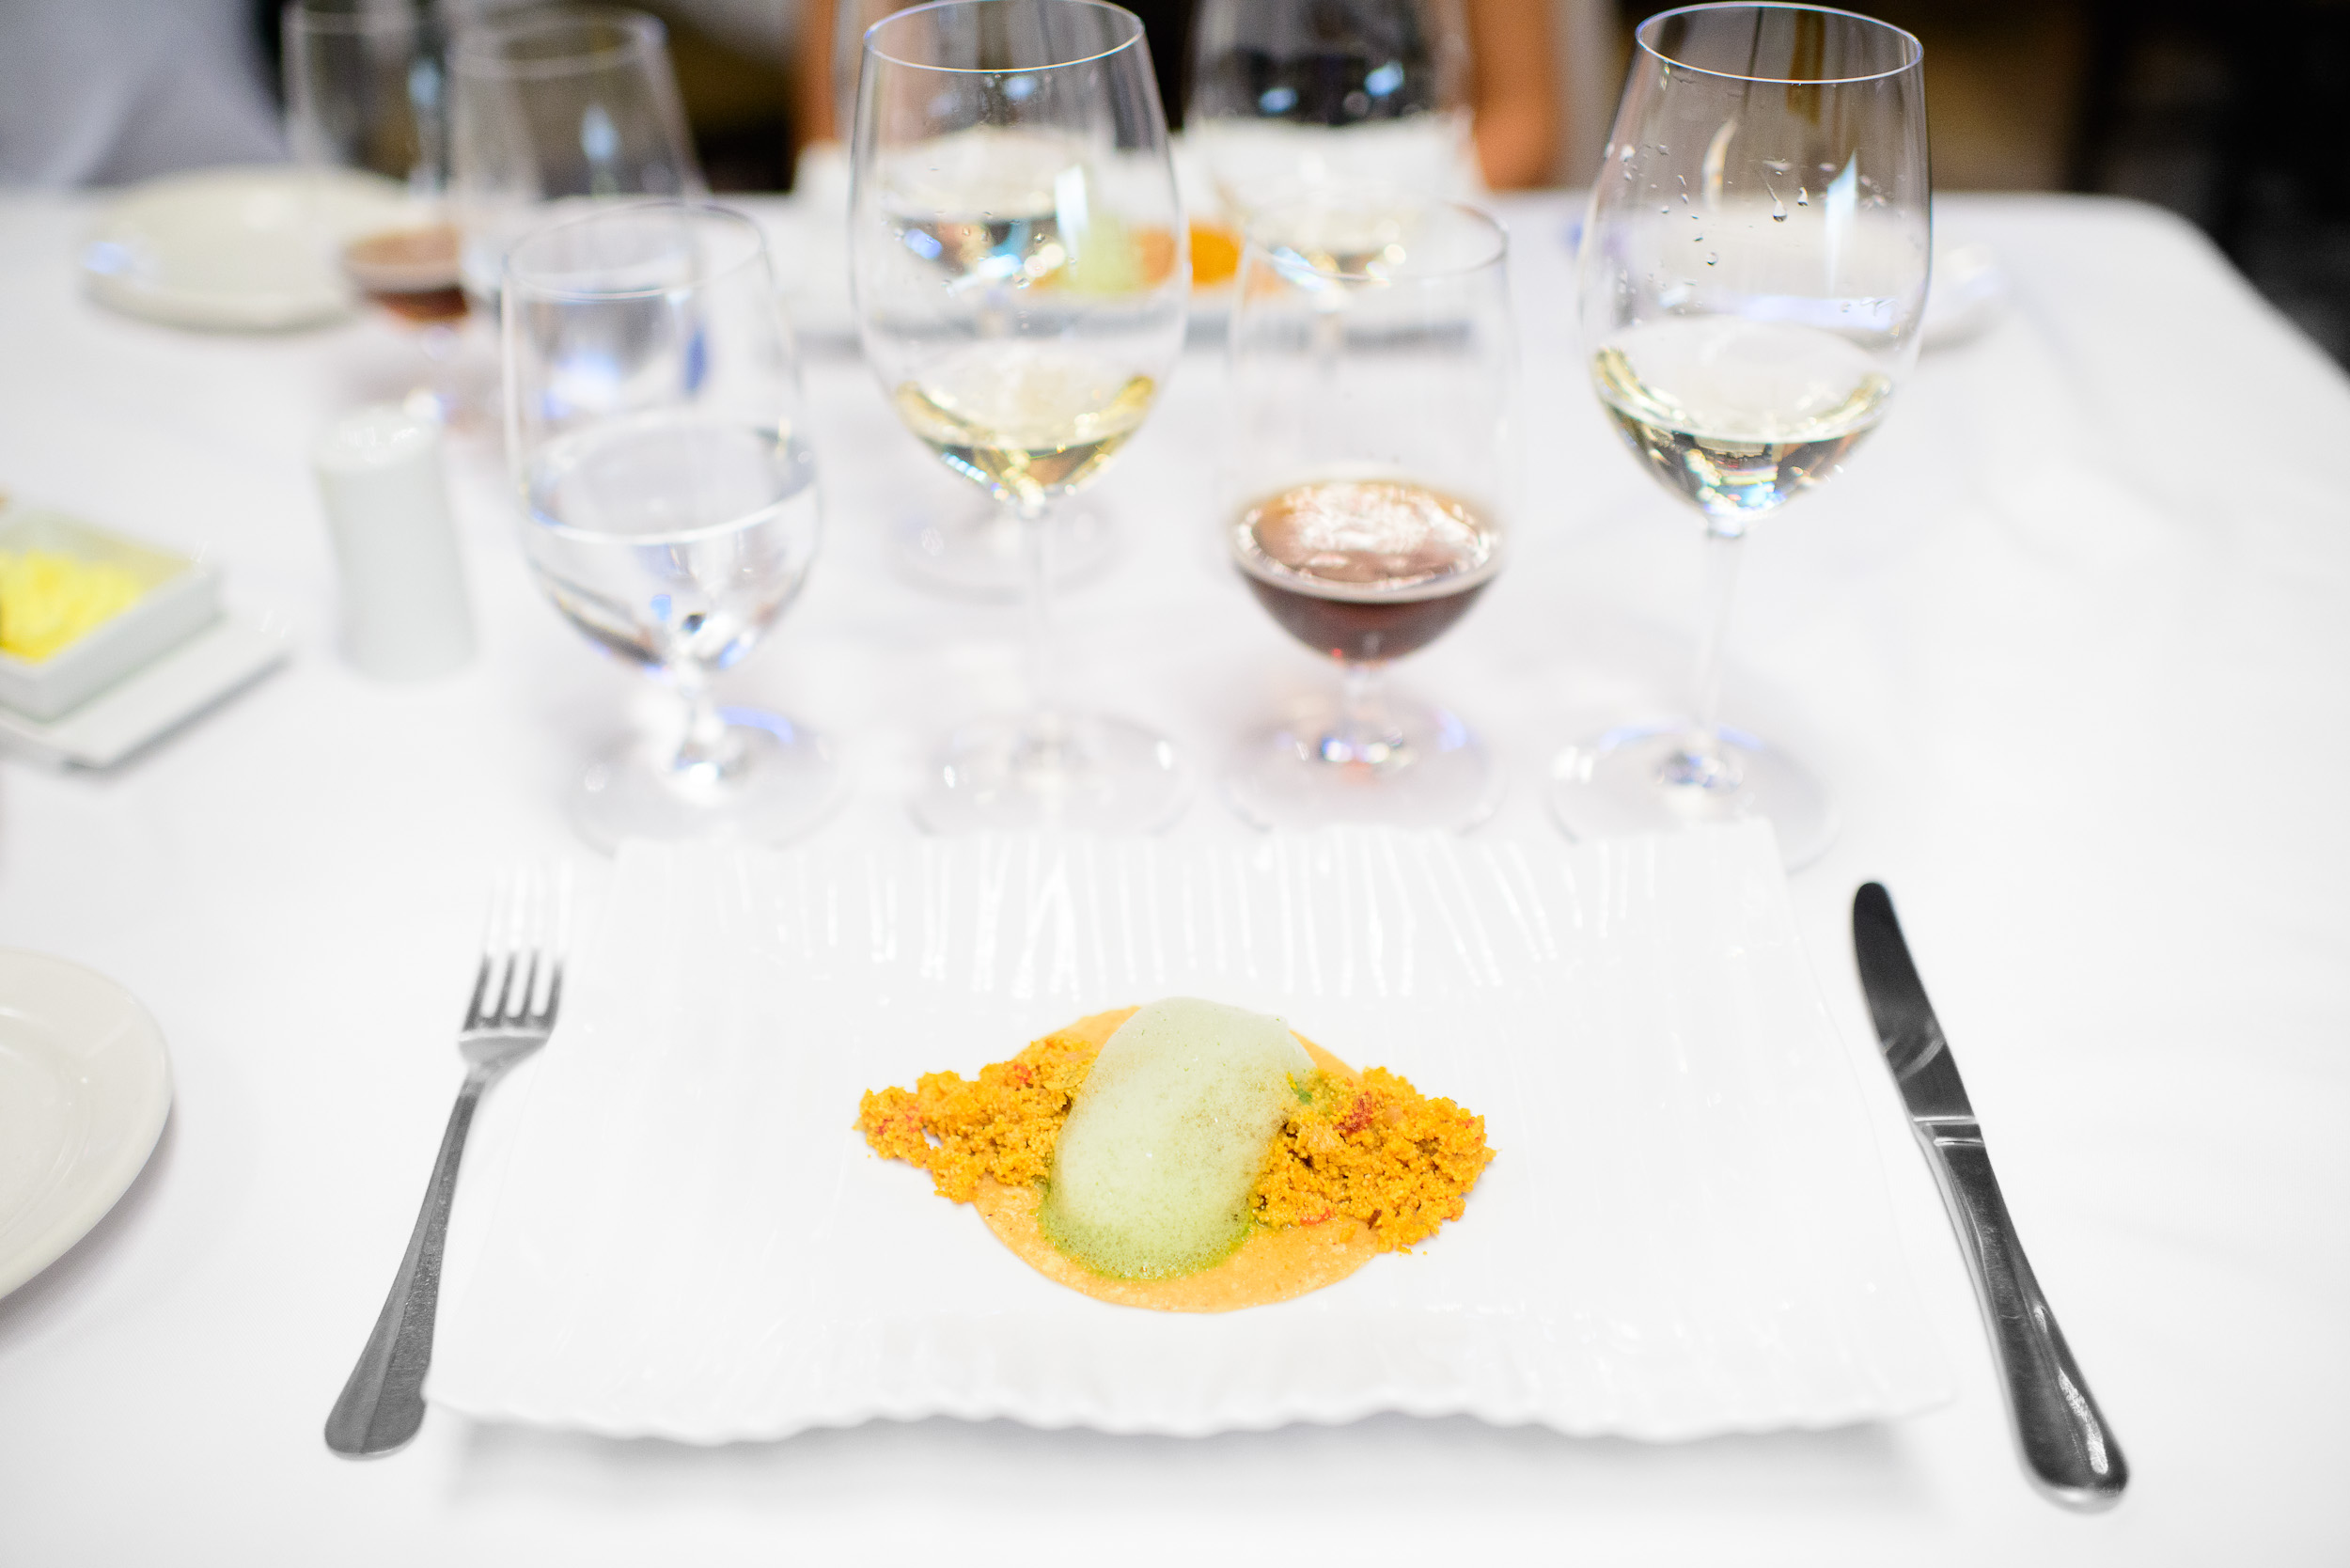 5th Course: Tacos de "caviar" mexiquense - hueva de carpa guisad